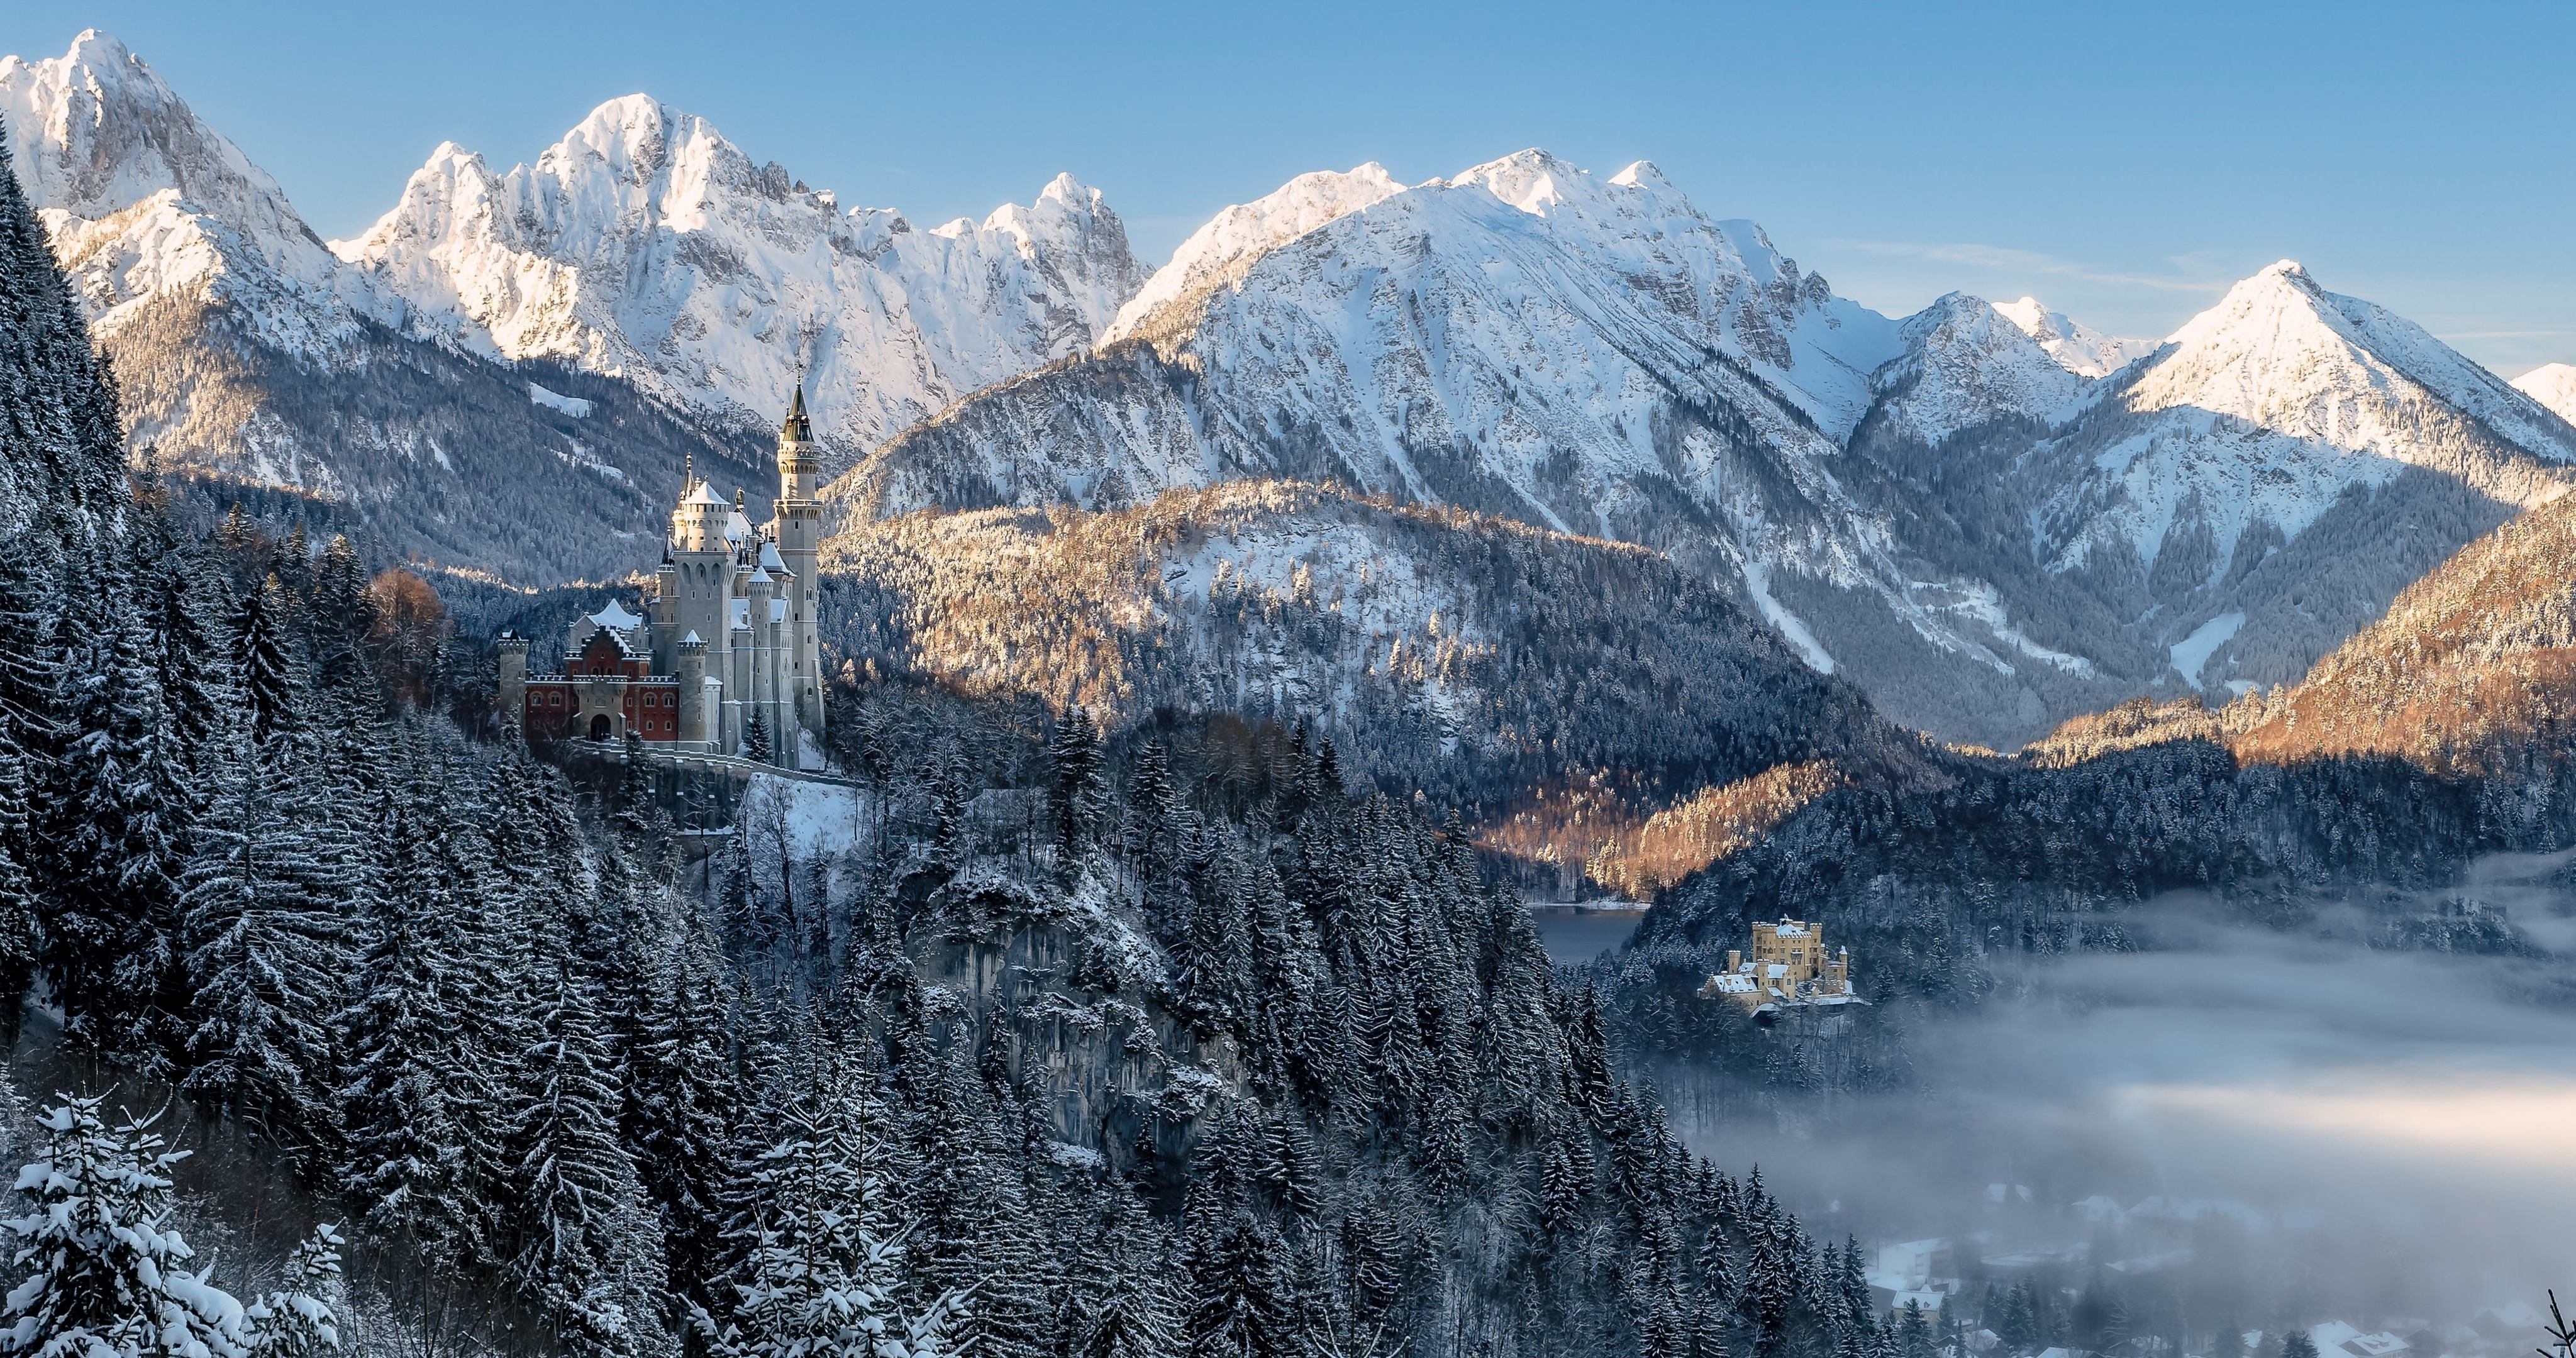 Обои на рабочий стол Горы, Природа, Бавария, Neuschwanstein Castle, Пейзаж, Германия, Альпы, Зима Лес